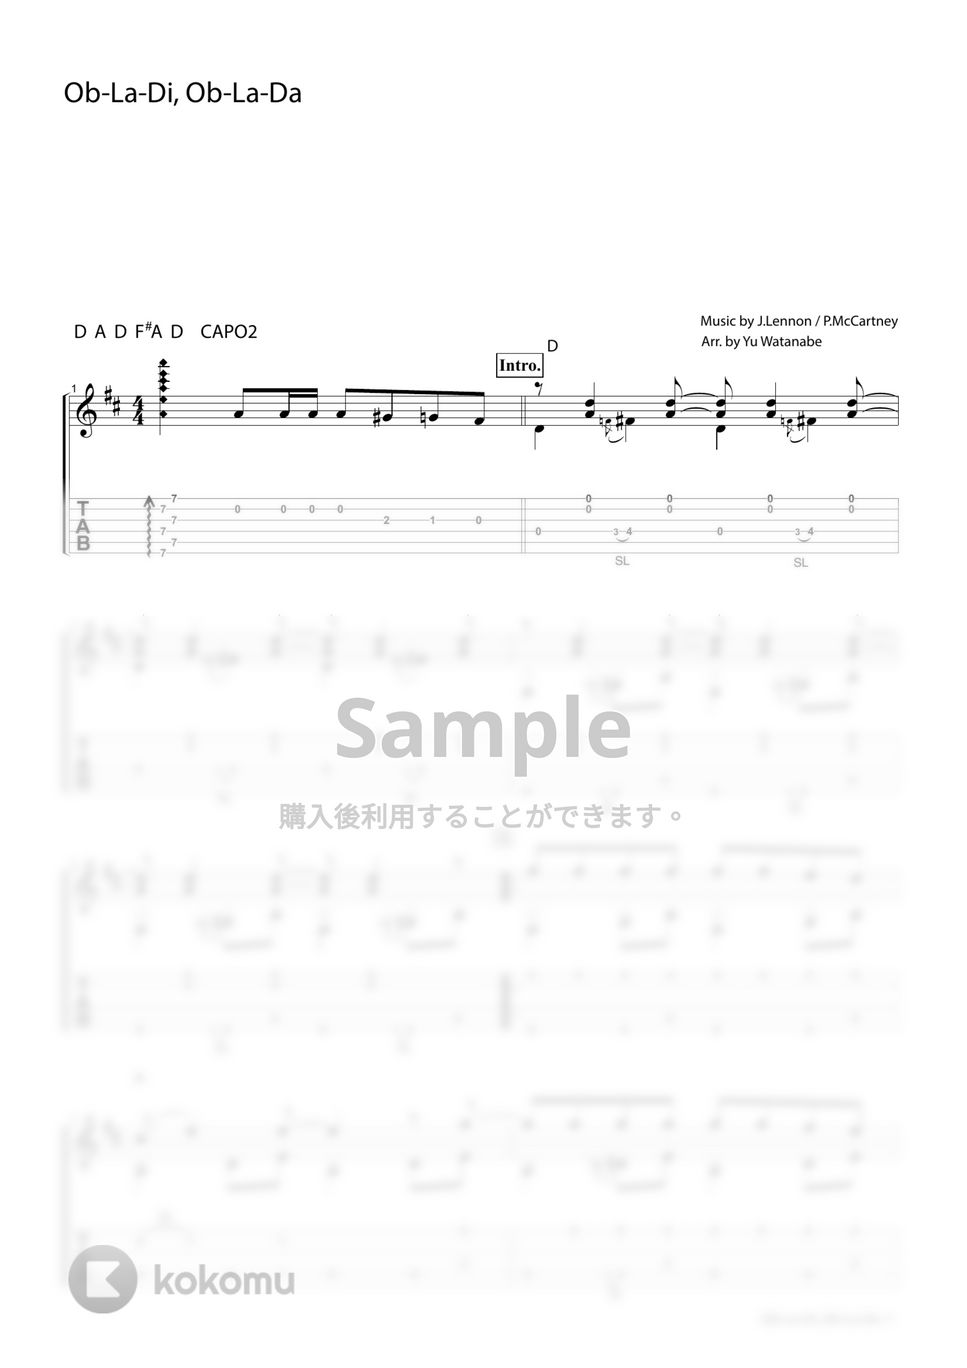 The Beatles - Ob-La-Di, Ob-La-Da by わたなべゆう